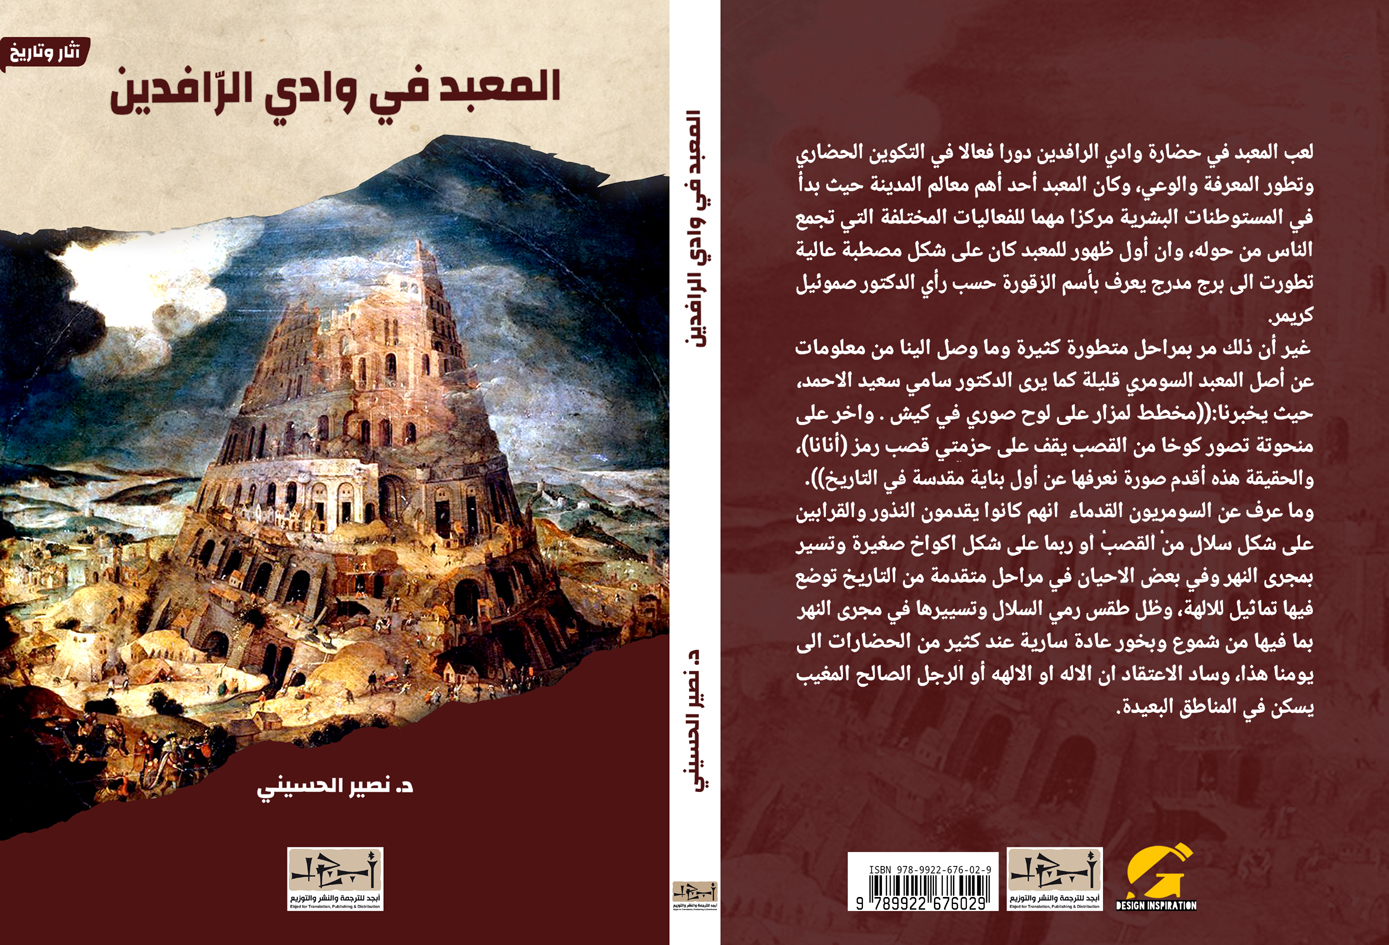 اسم الكتاب: المعبد في وادي الرافدين تأليف: د. نصير الحسيني